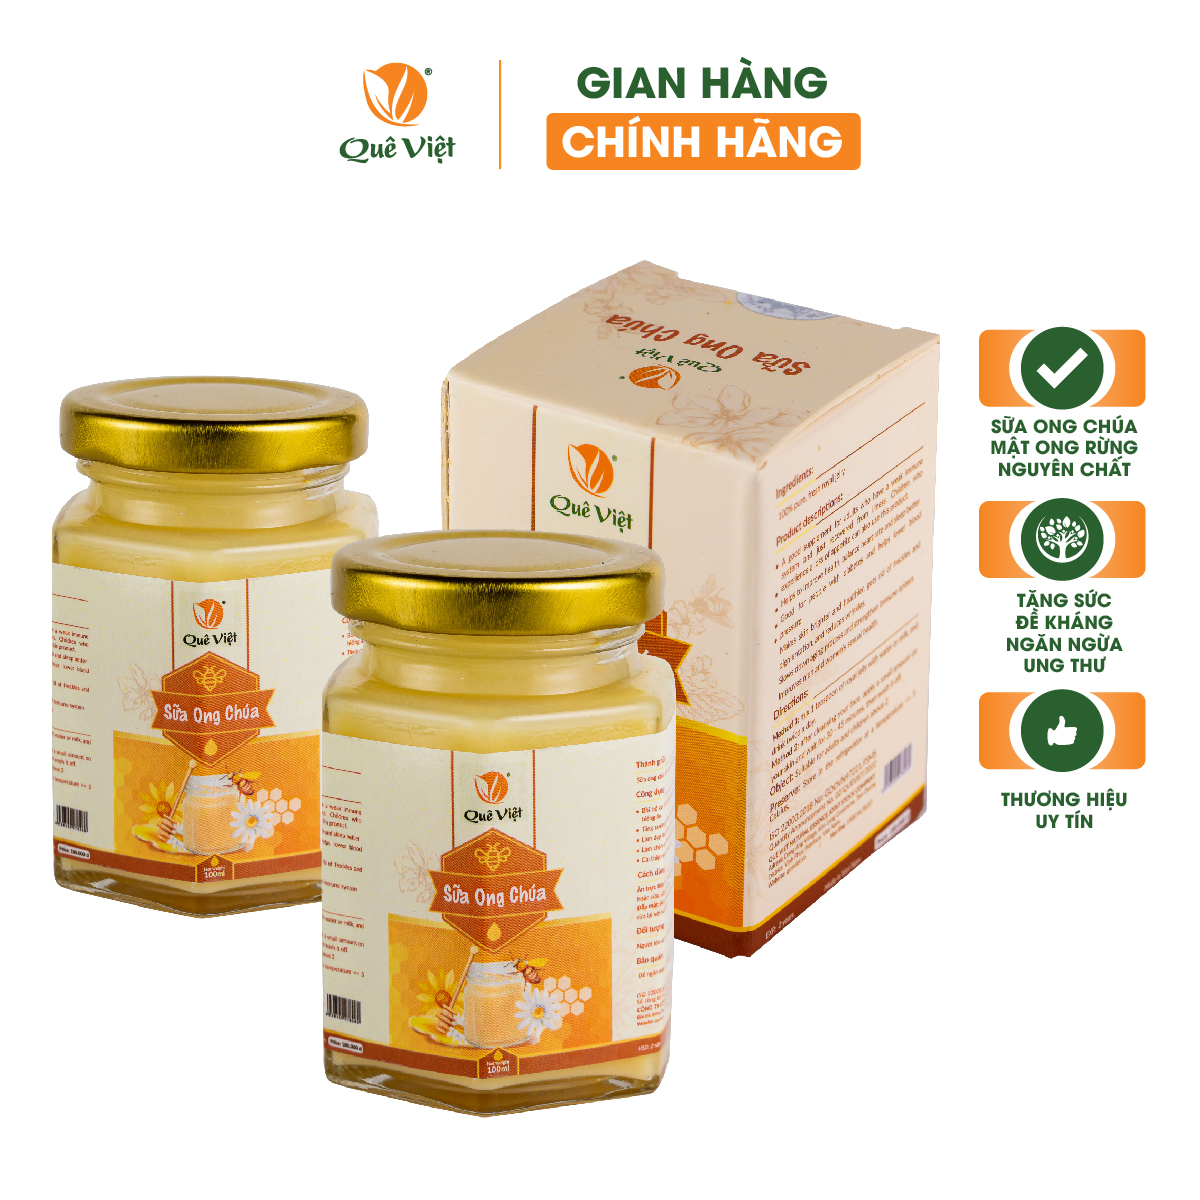 Sữa ong chúa Quê Việt bồi bổ cơ thể, tăng cường sức khoẻ (2 hộp x 100ml)